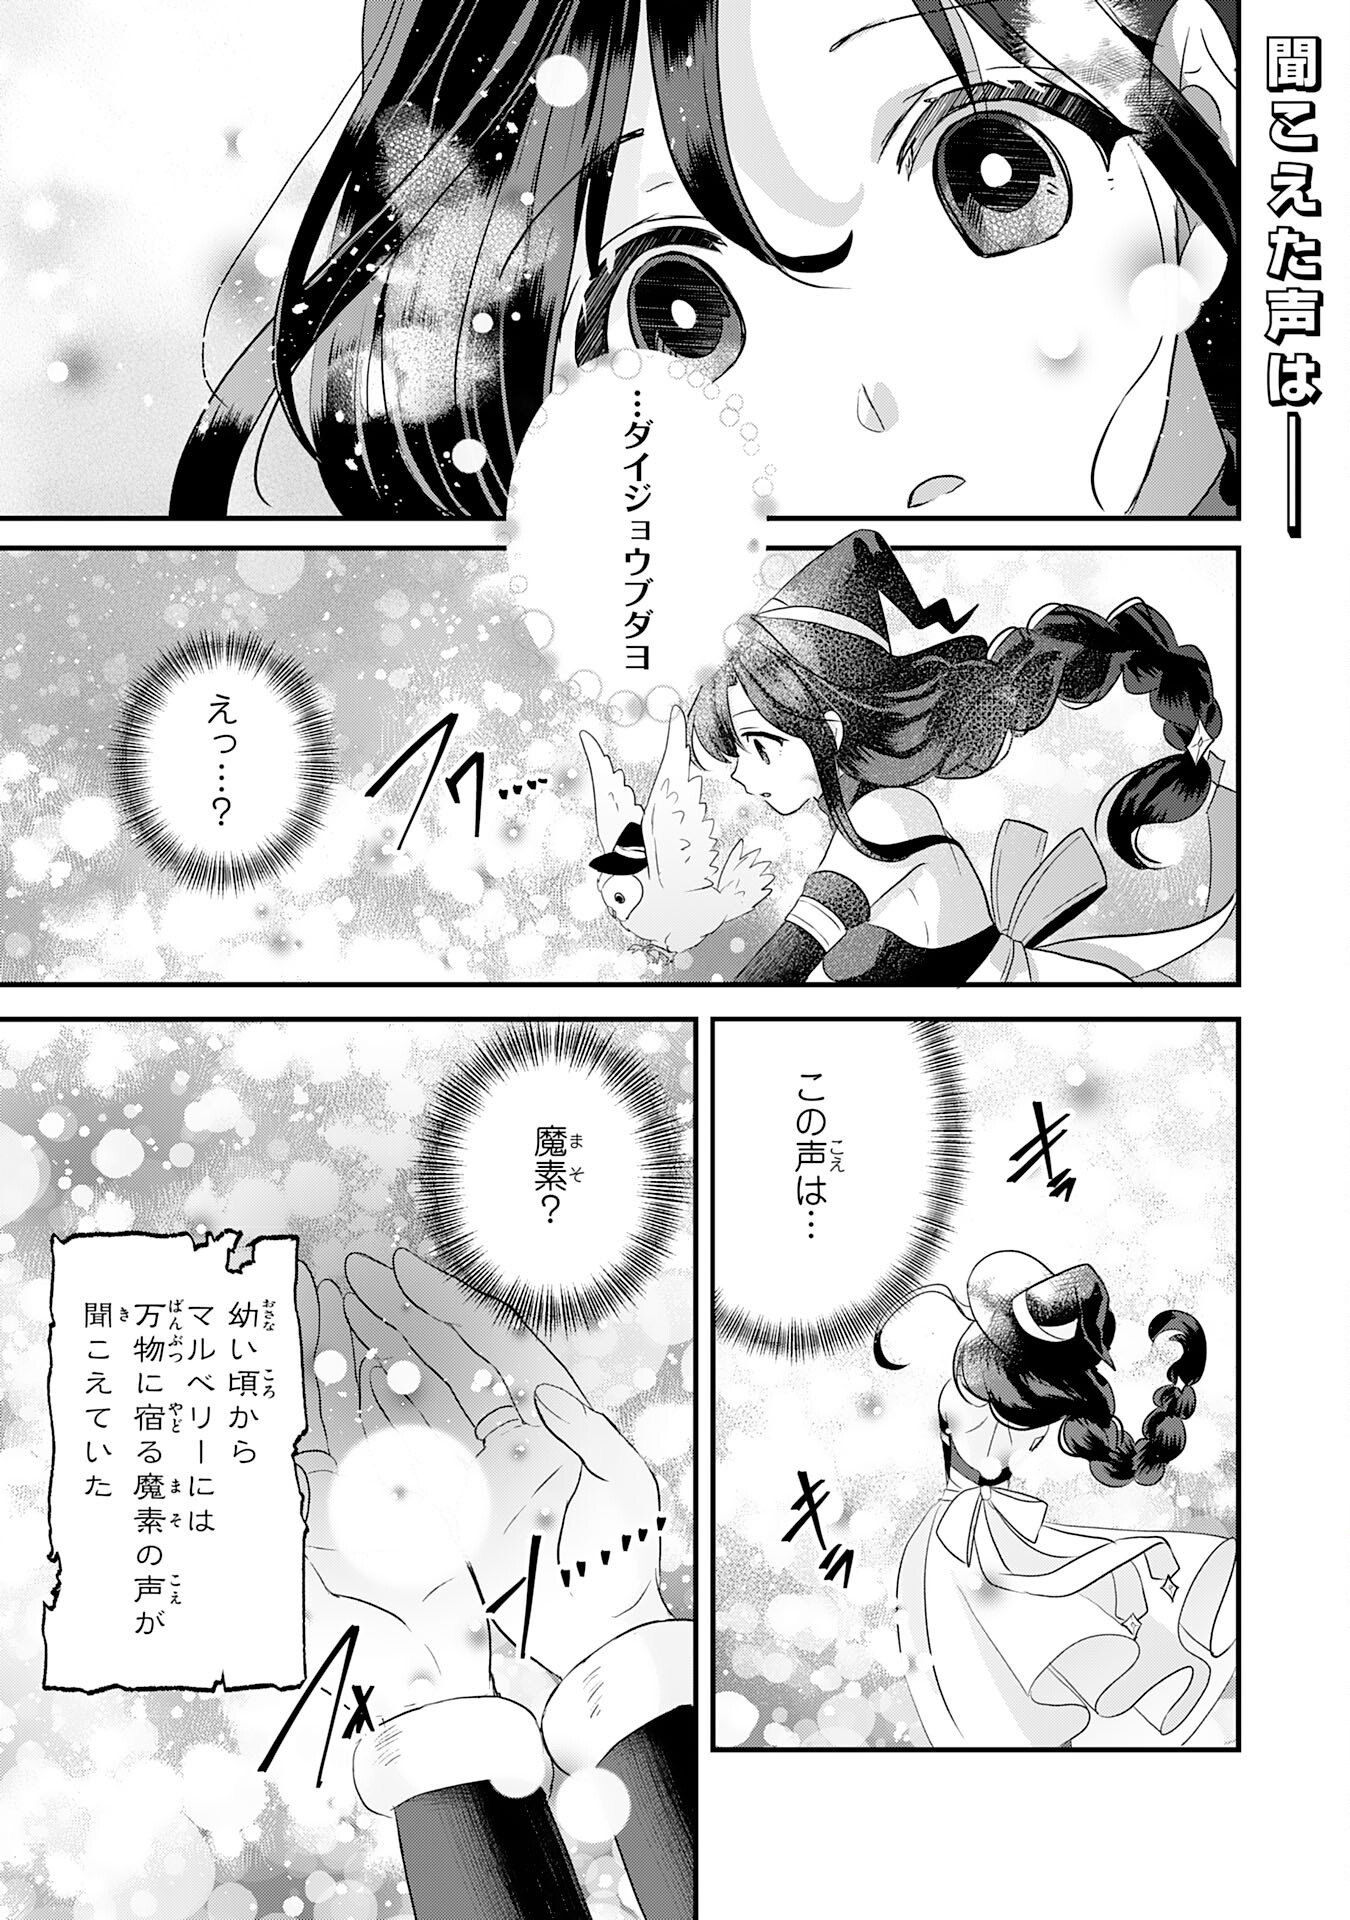 Kounchi 999 no Watashi, Sokushi Mahou ga Zettai ni Seikou suru no de Sekai Saikyou desu - Chapter 24 - Page 1